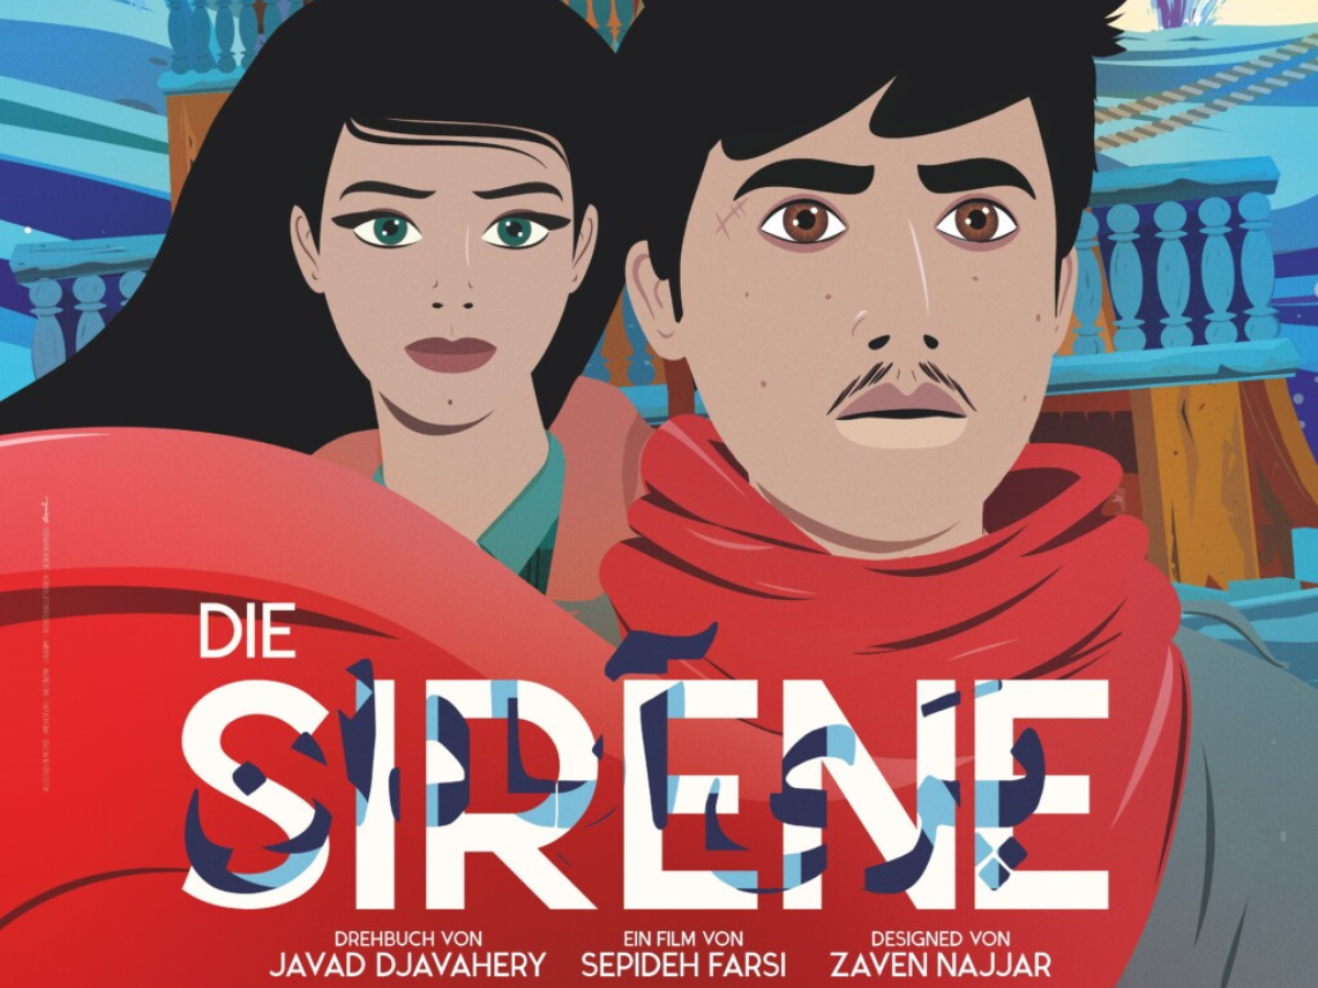 Film und Gespräch: La Sirène (The Siren)